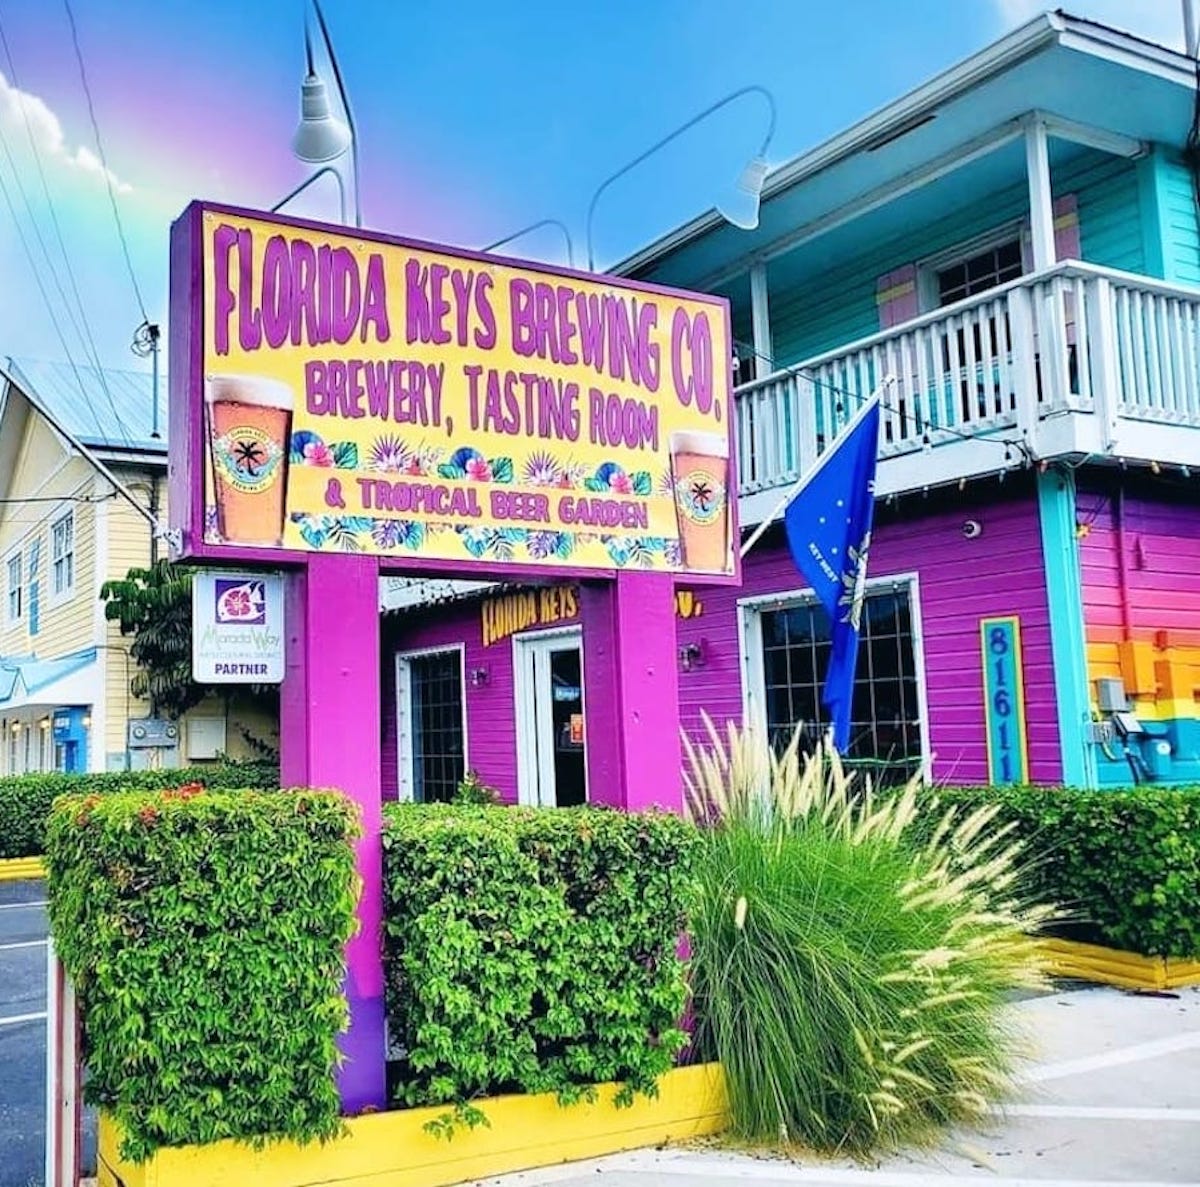 Por qué necesita visitar Florida Keys Brewing Company en Islamorada - 3